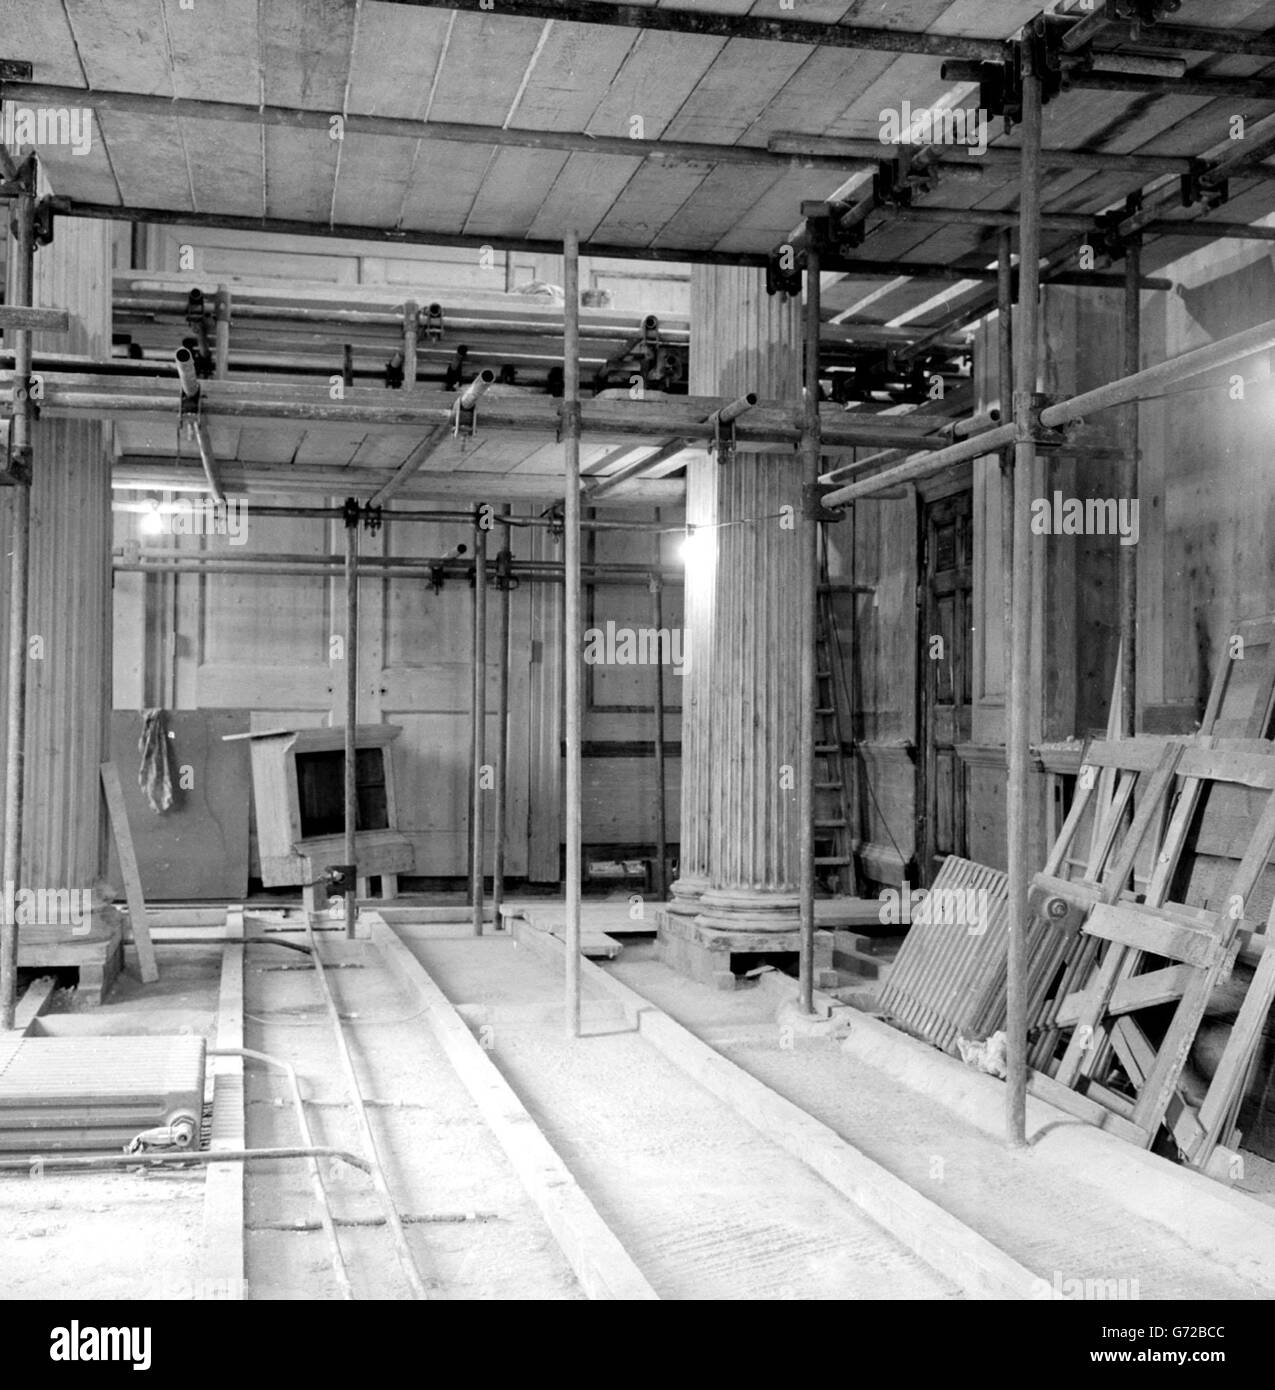 Stahlrohr-Gerüste und Bretter umgeben die klassischen Säulen des Kabinetts in No10. Während der umfangreichen Rekonstruktion. Stockfoto